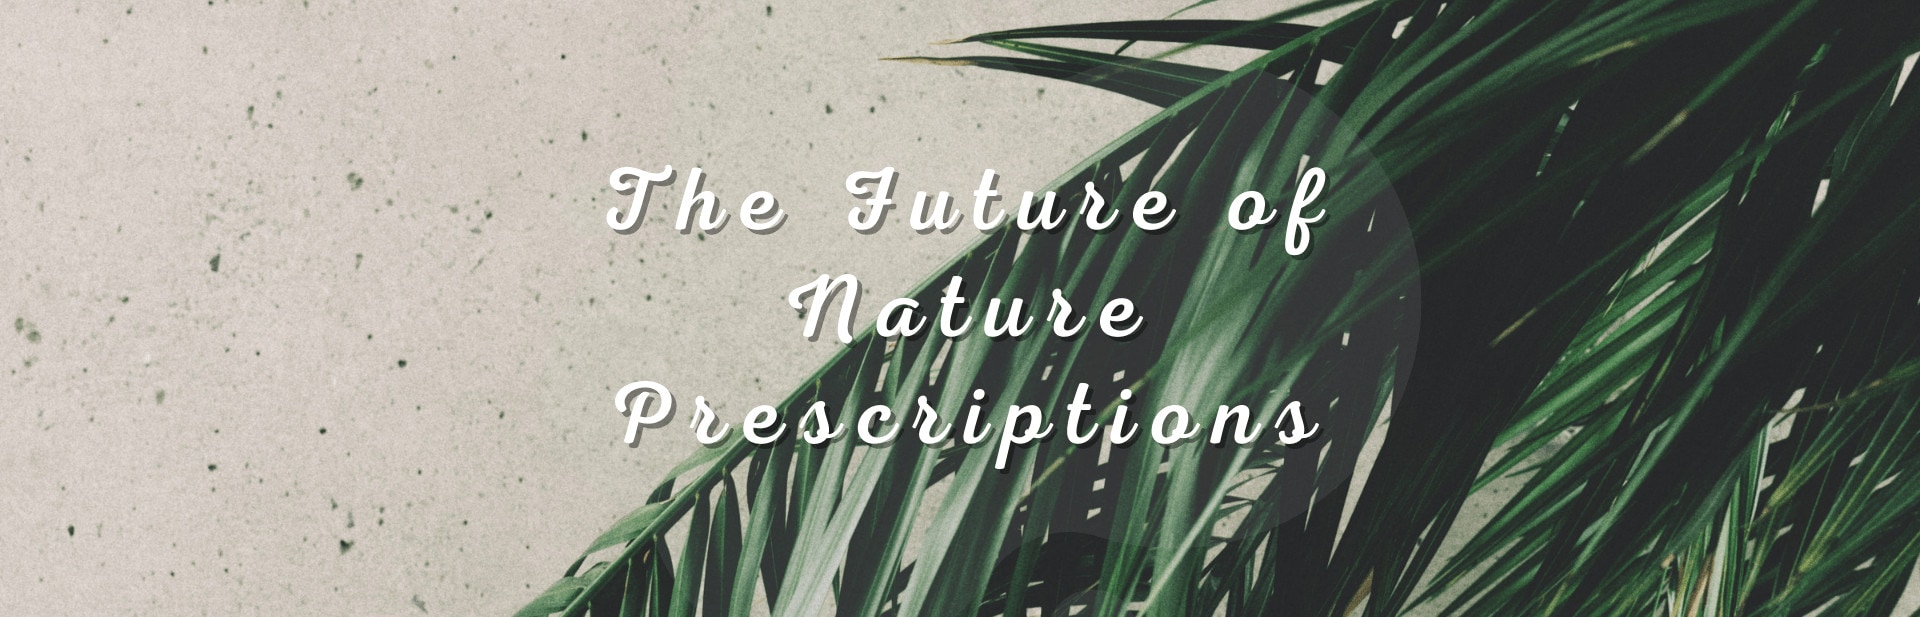 The Future of ‘Nature Prescriptions’